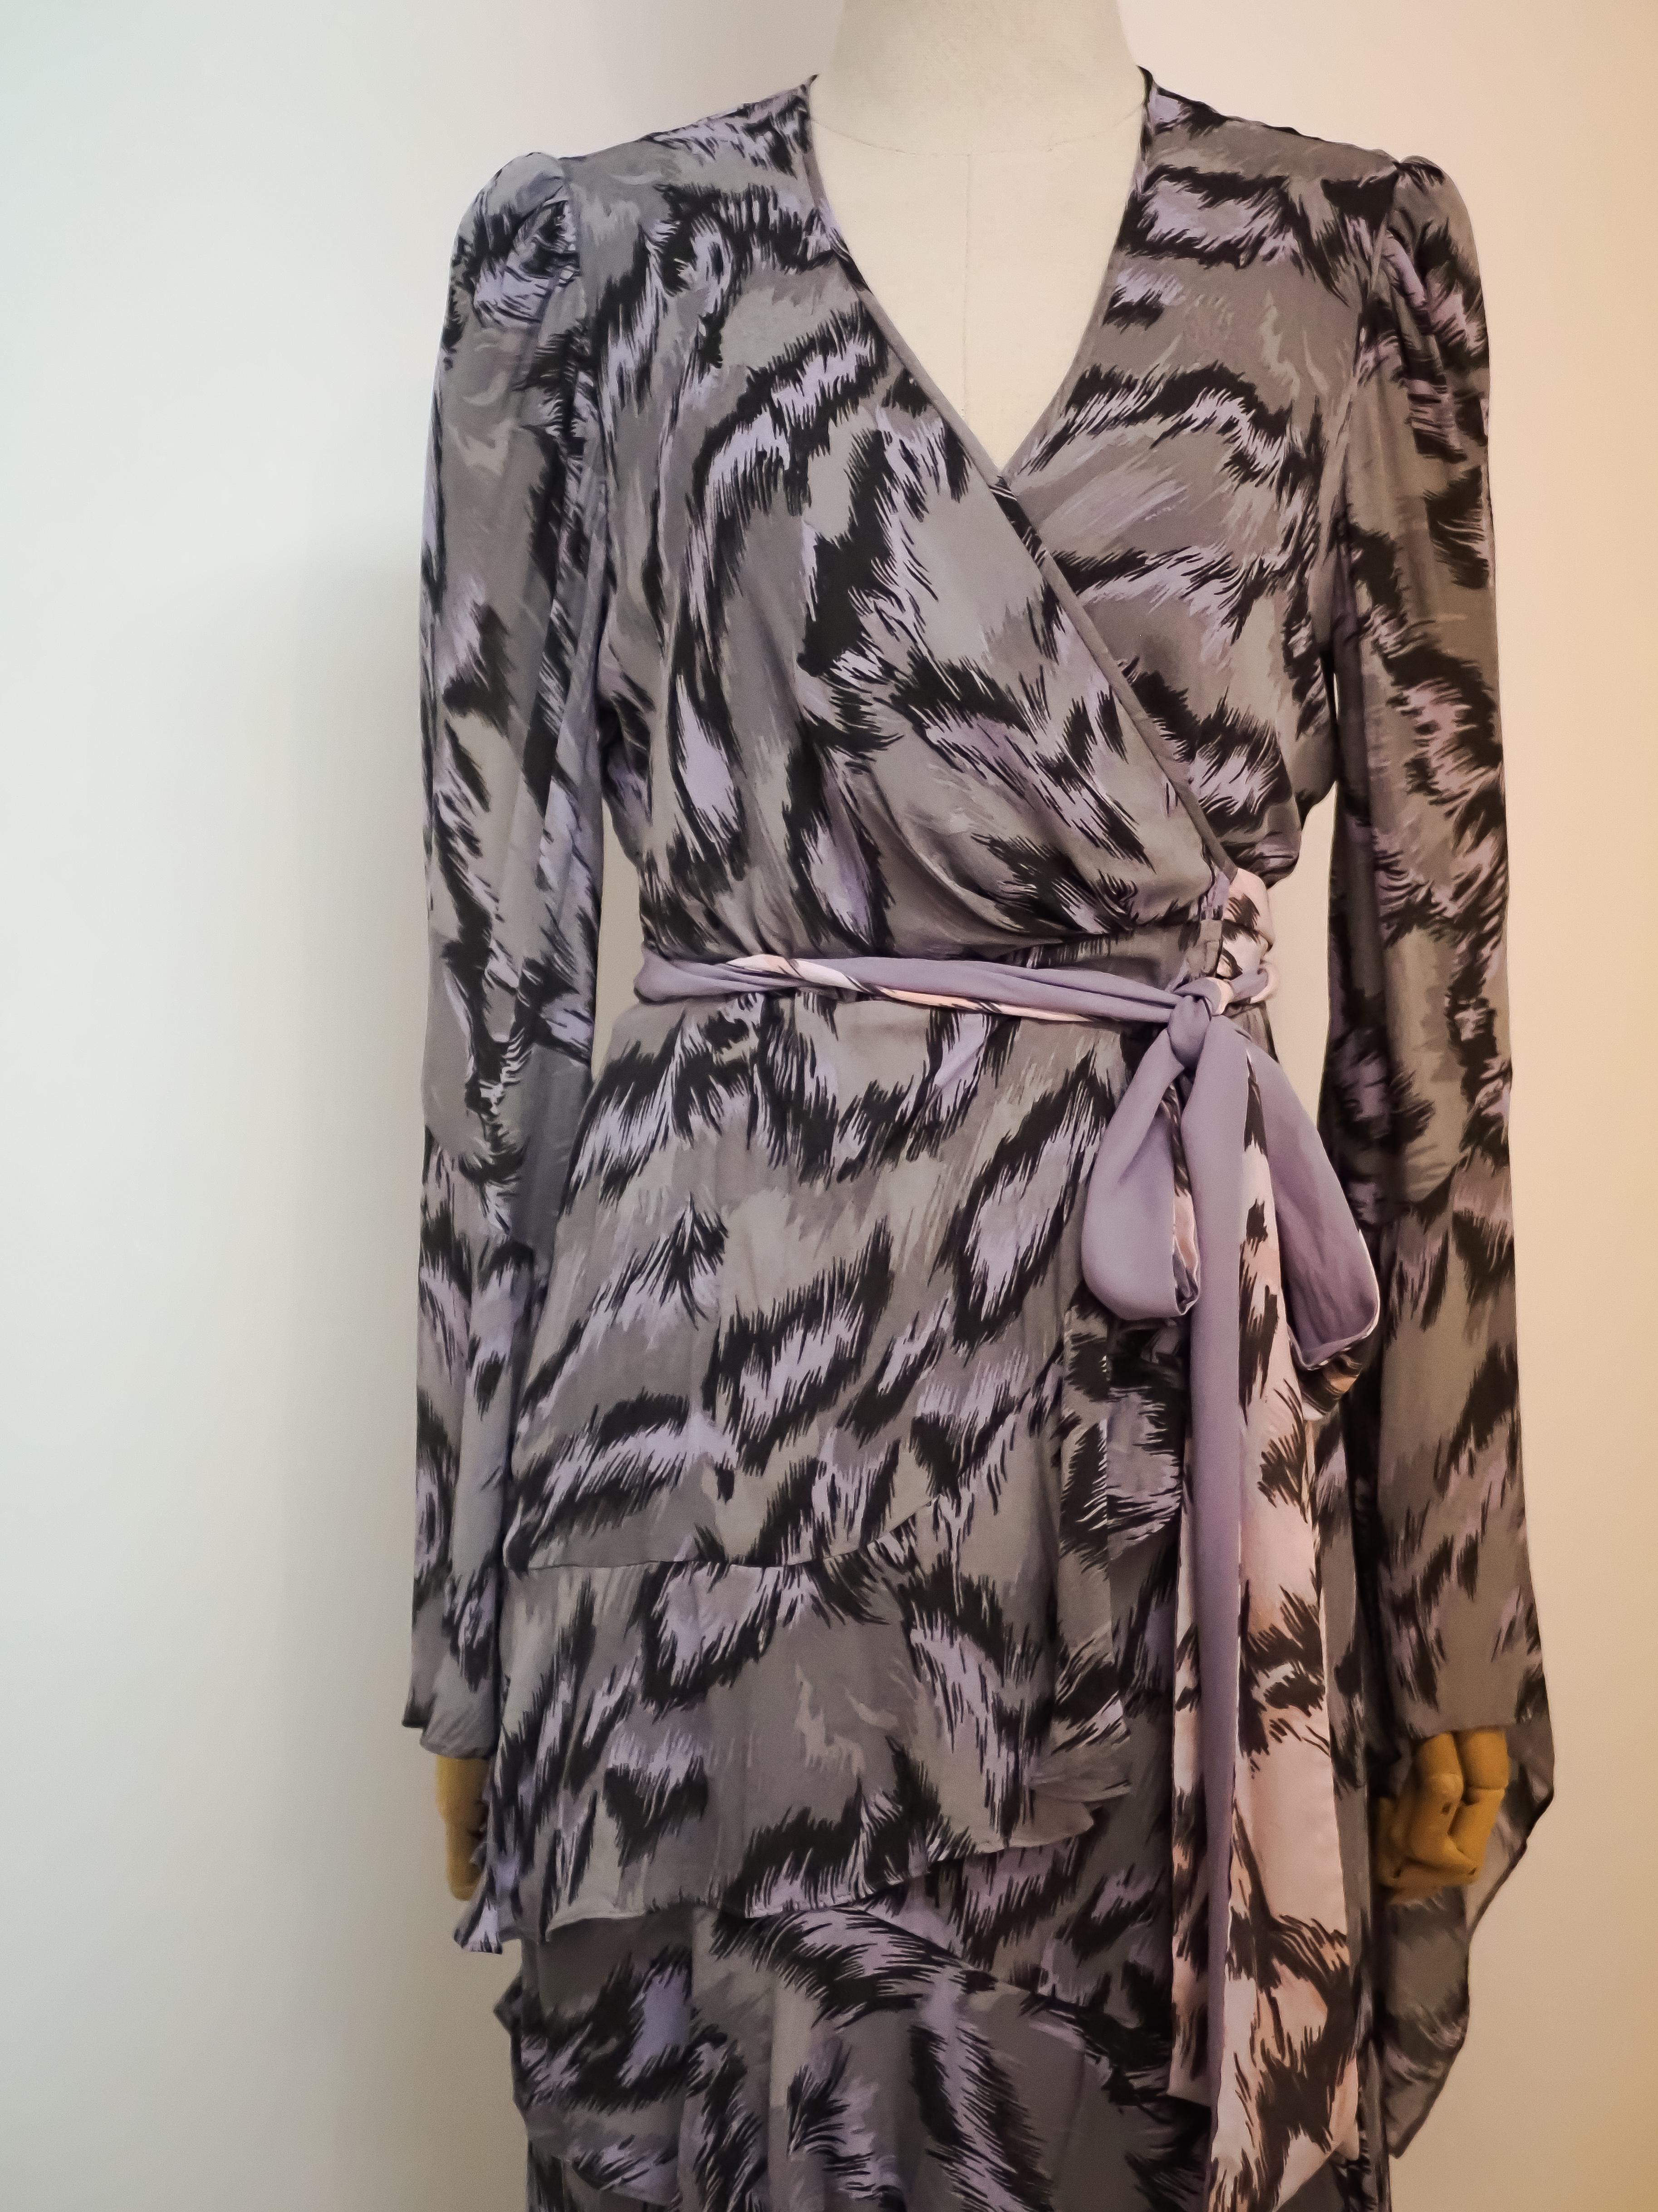 Diane Von Furstenberg Kleid NWOT
Größe 8